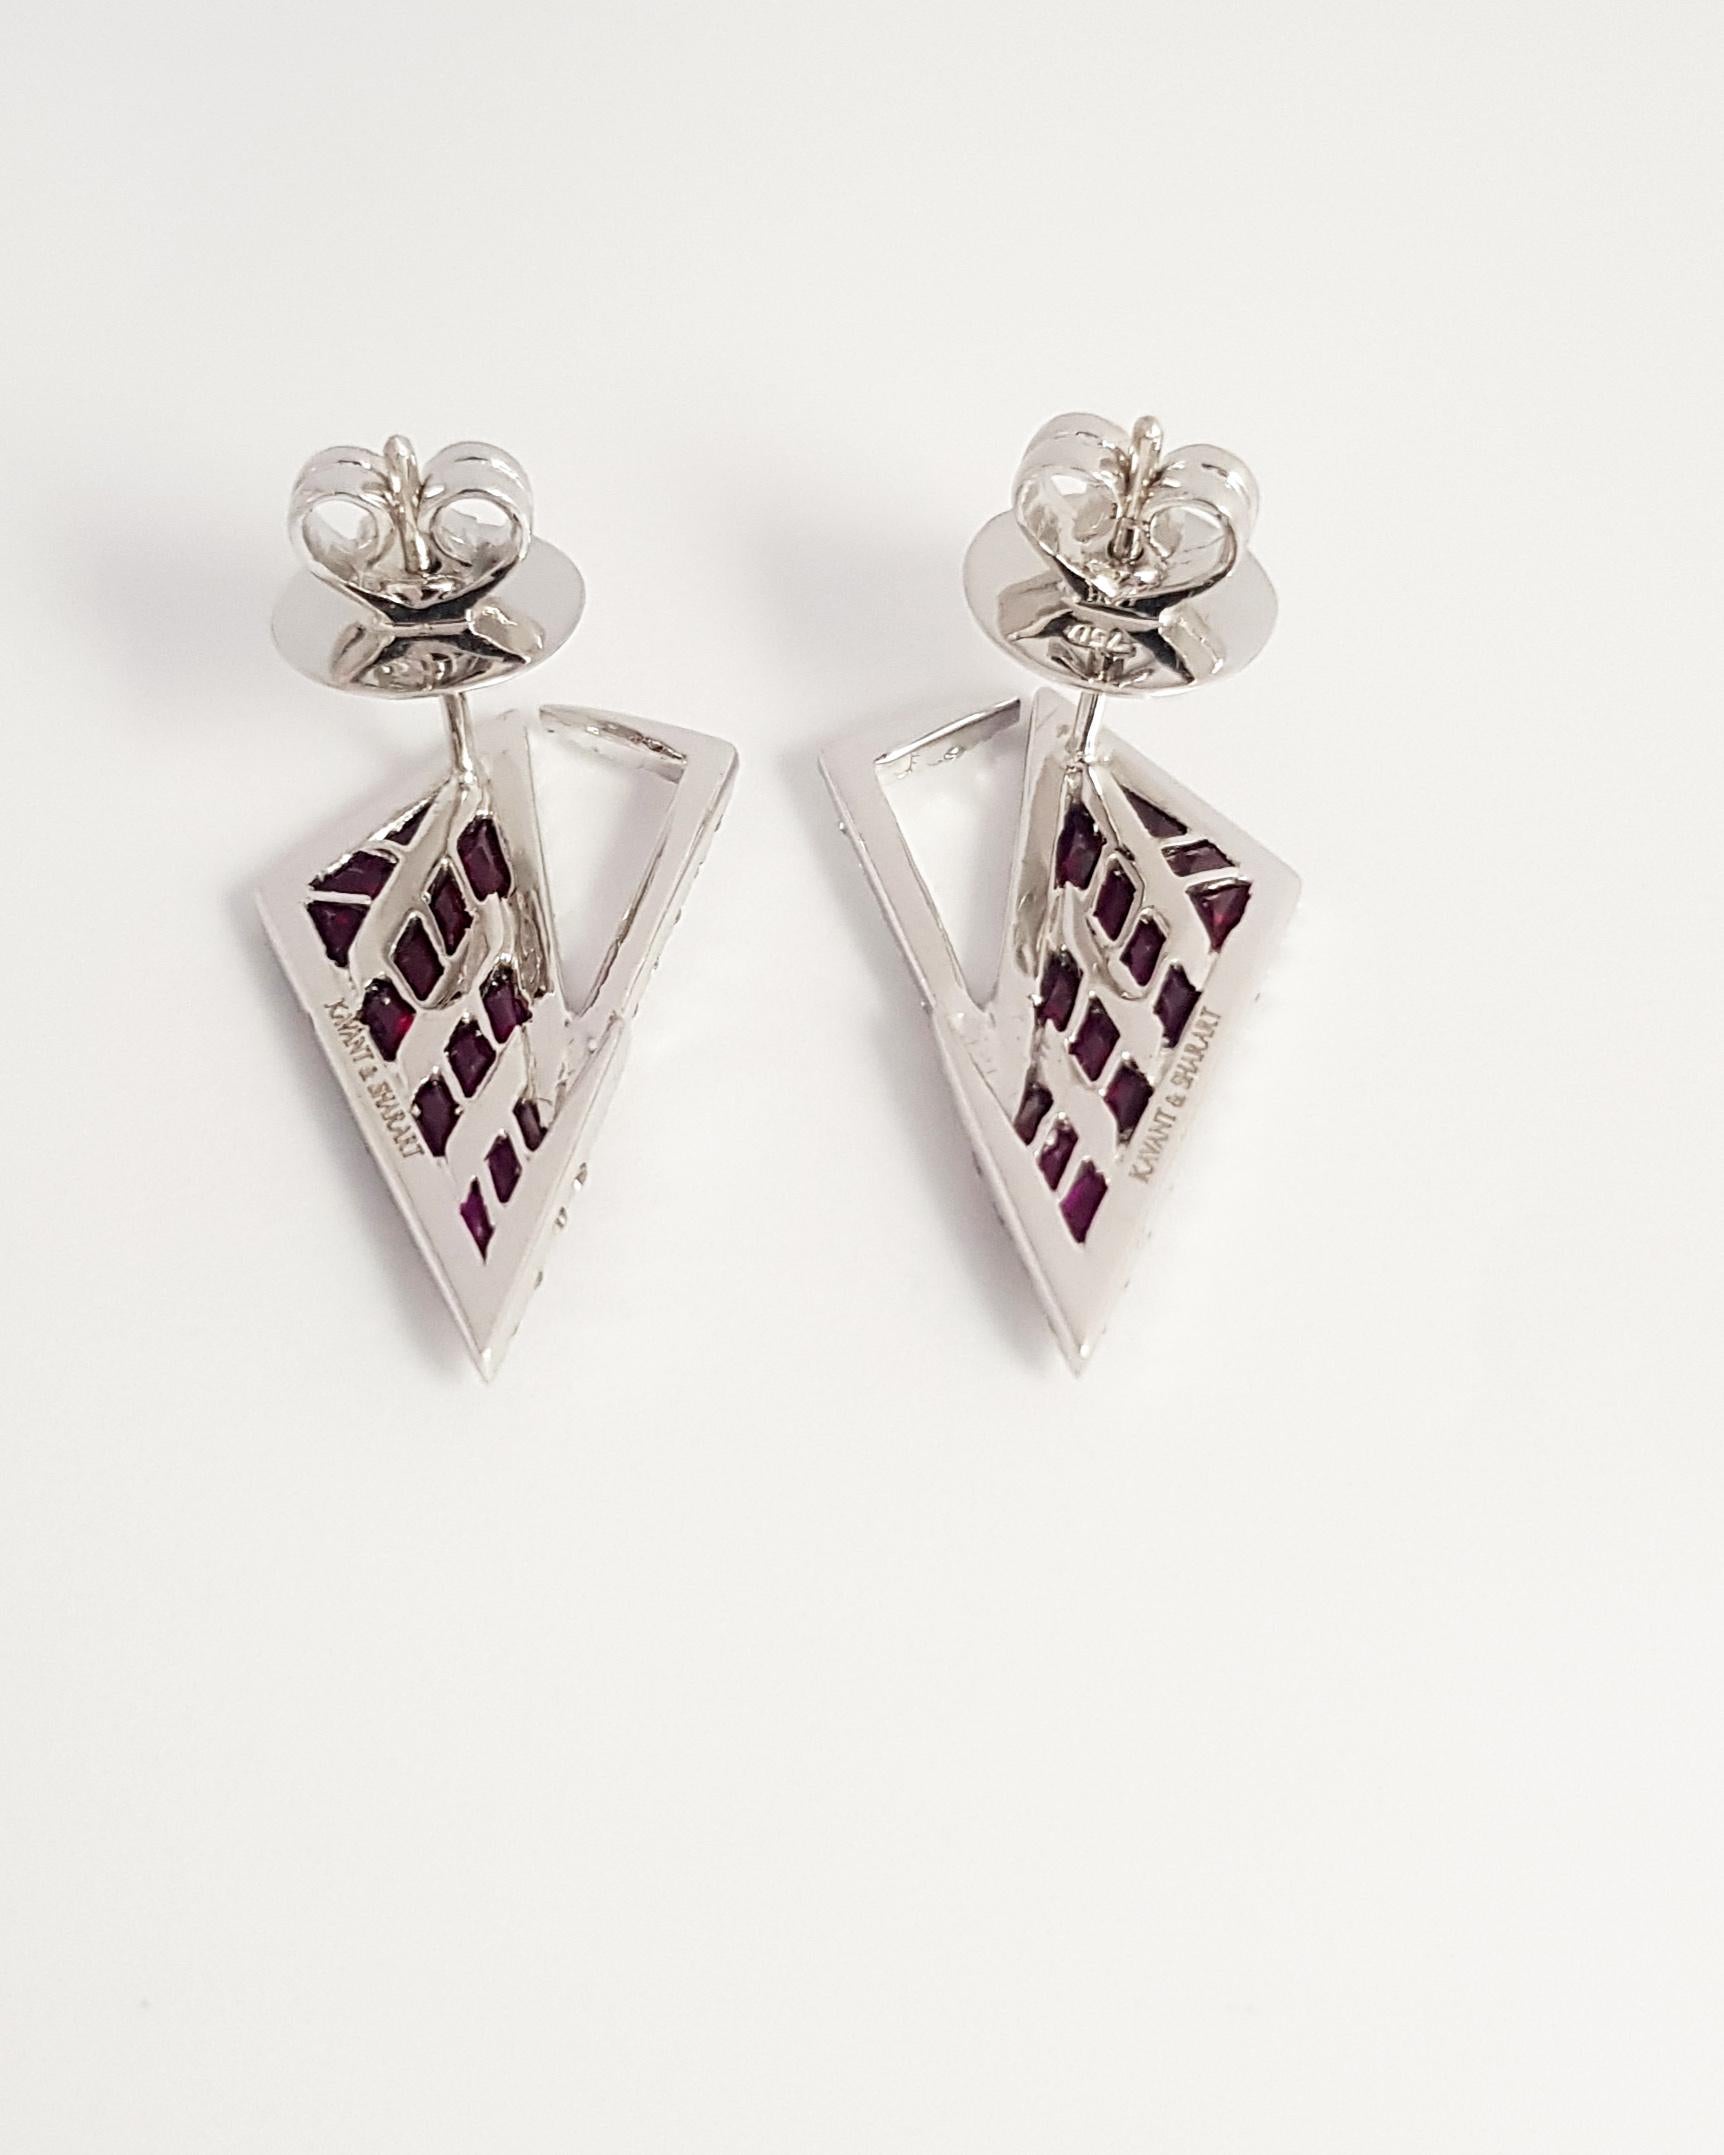 Kavant & Sharart Origami Ruby, Diamond Earrings 18K White Gold For Sale 1